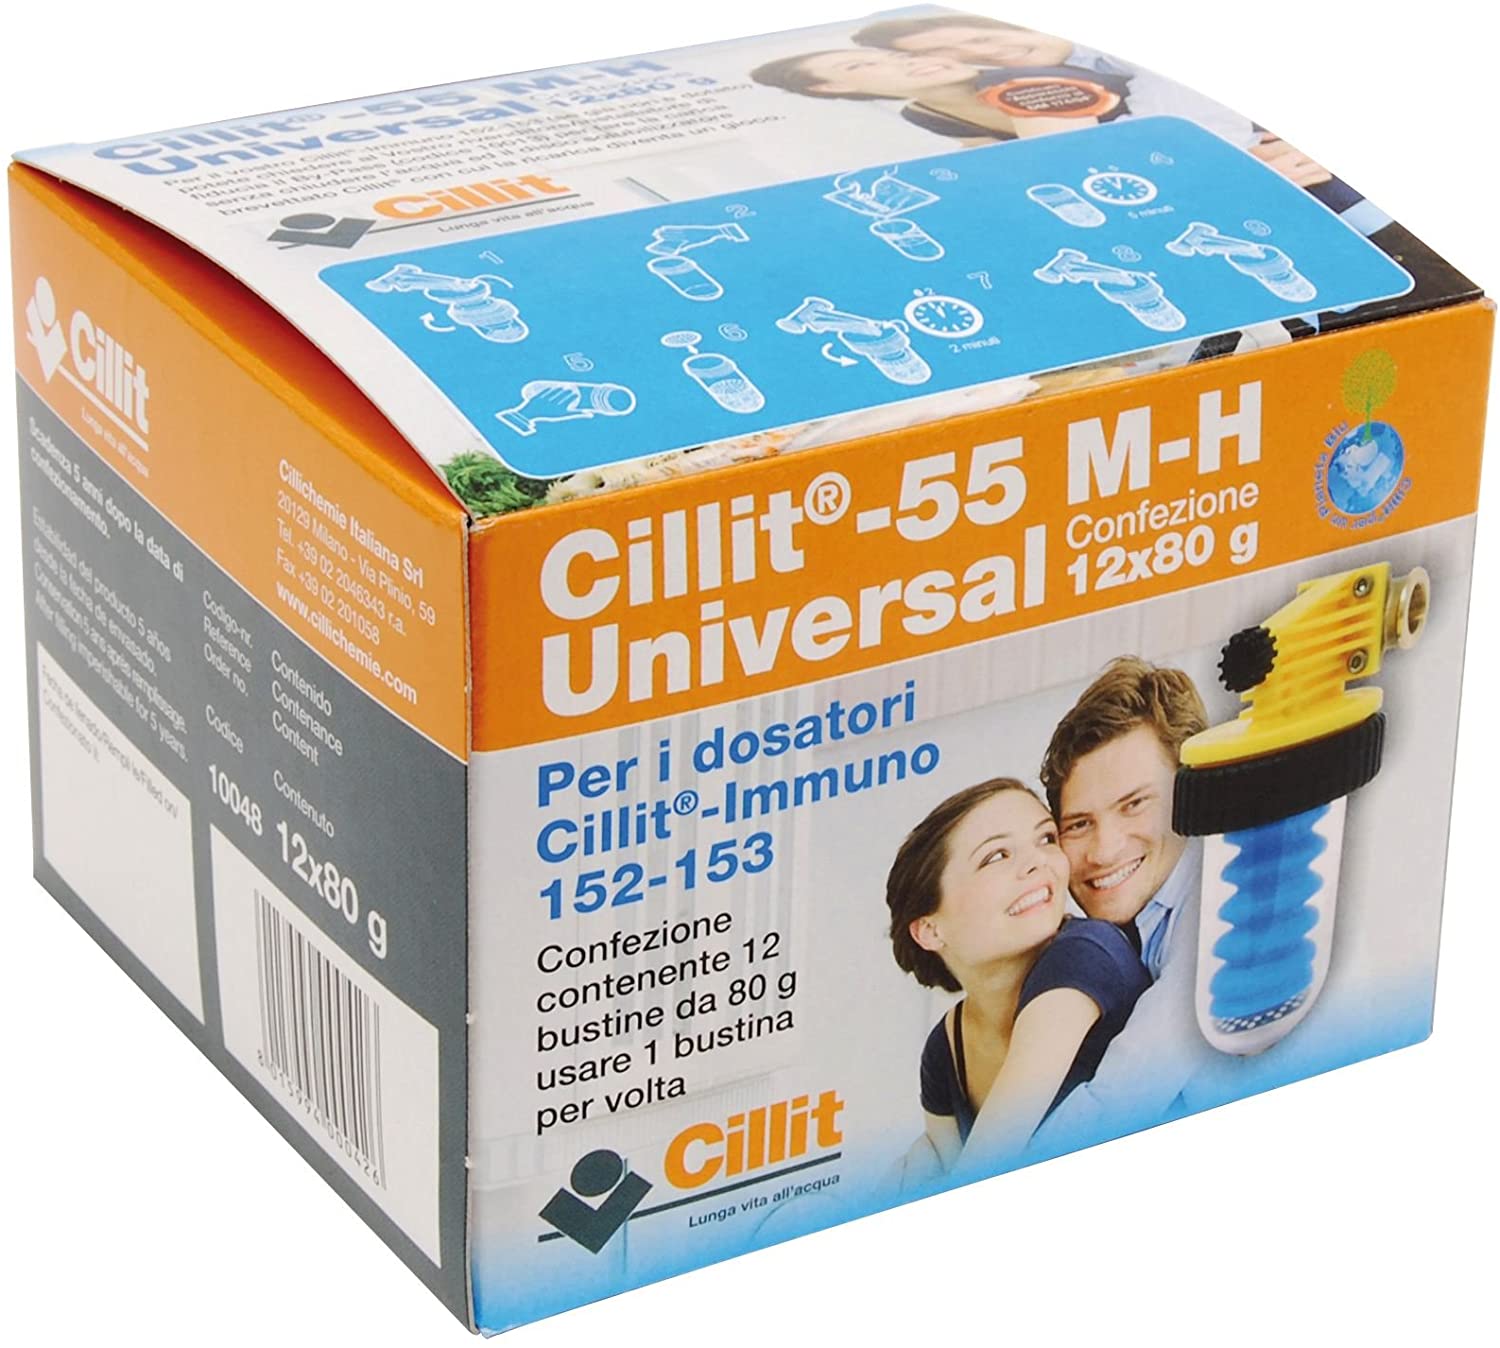 Cillichemie Cillit-55 M-H Uni Polifosfati X Immuno 12X80 Gr